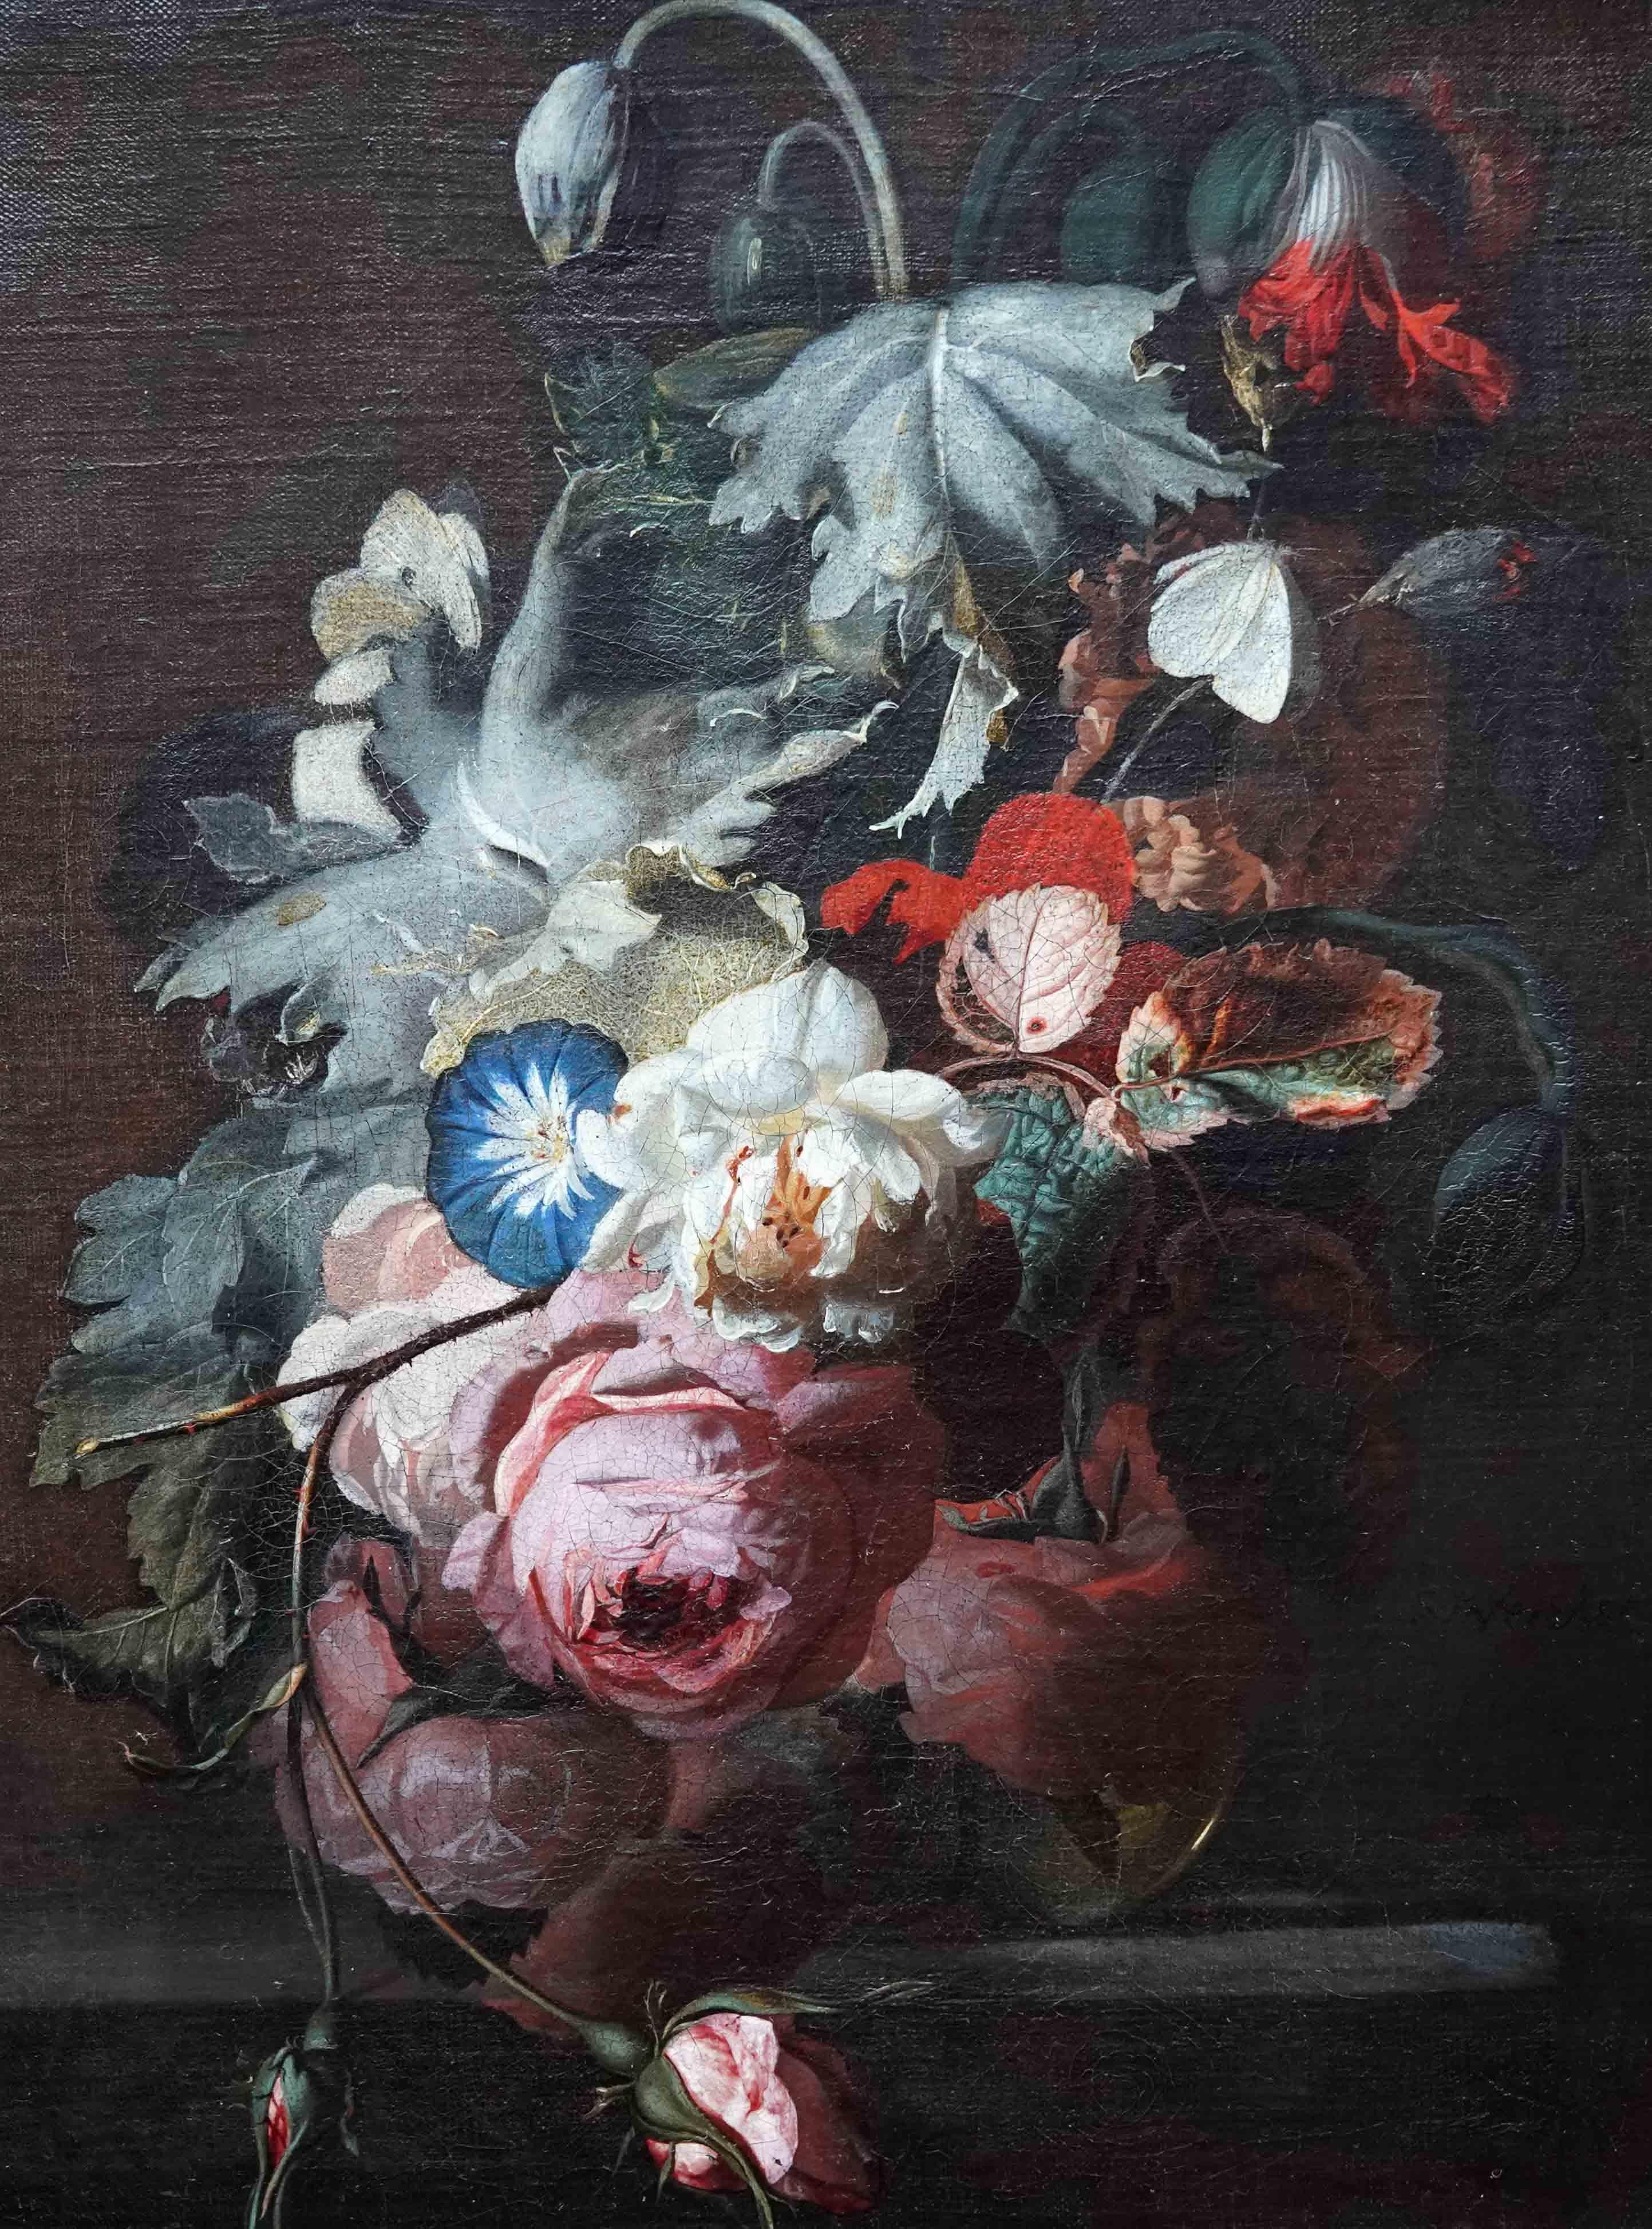 Stillleben mit Blumen in Vase auf Ledge – niederländisches Ölgemälde eines alten Meisters aus dem 17. Jahrhundert (Alte Meister), Painting, von Simon Pietersz Verelst